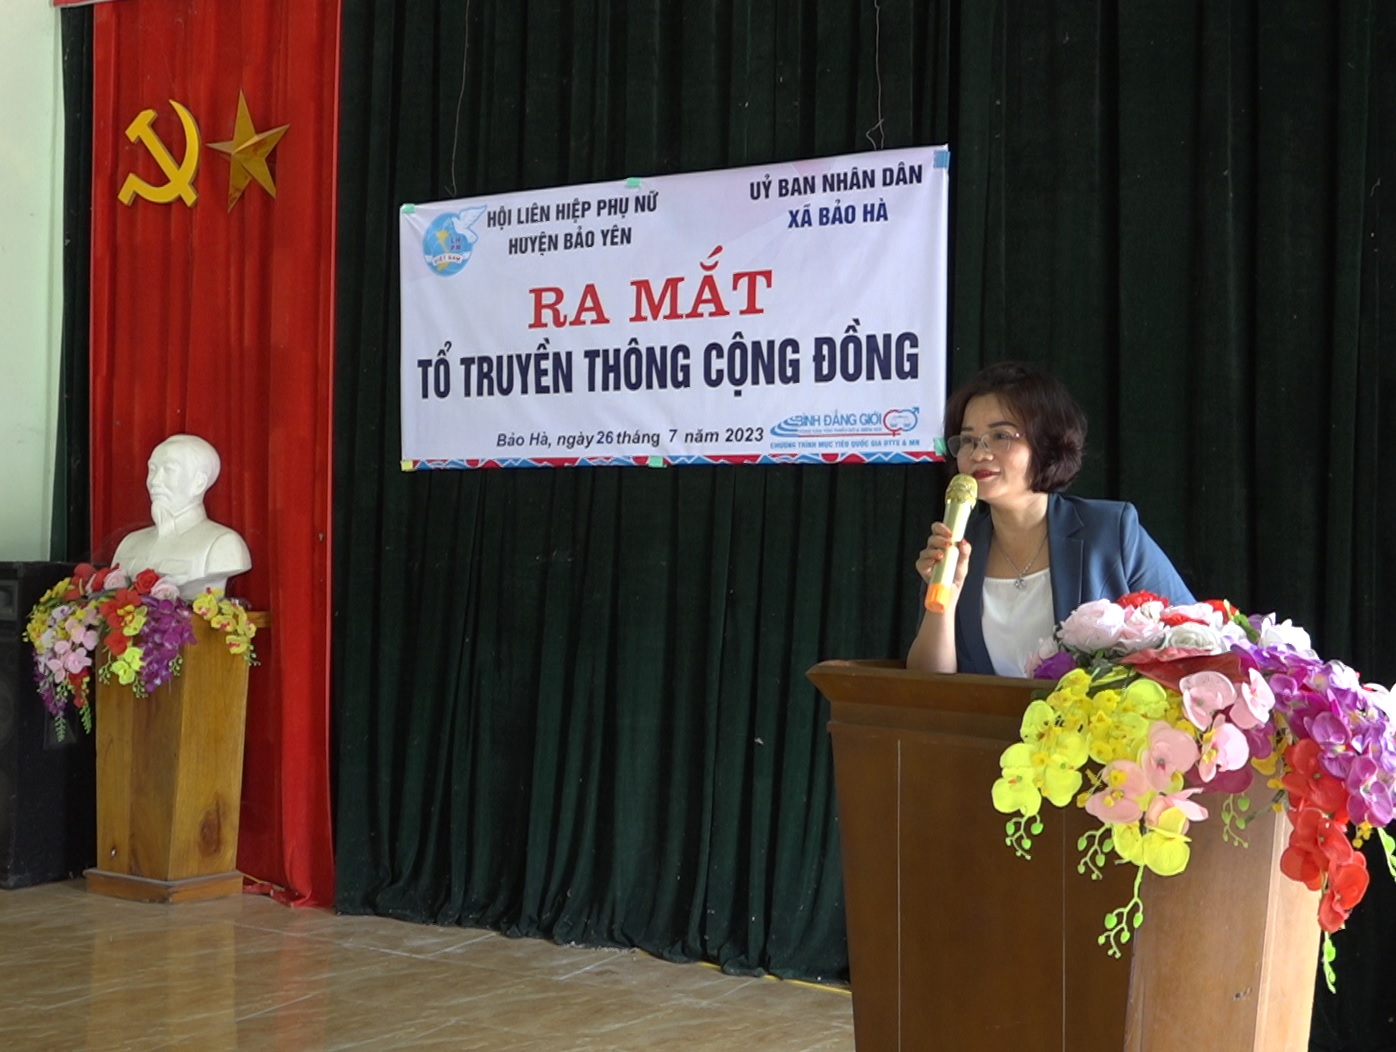 Đồng chí Ngô Hồng Thắm, Huyện ủy viên, Chủ tịch Hội Liên hiệp phụ nữ huyện Bảo Yên phát biểu tại buổi ra mắt tổ truyền thông cộng đồng